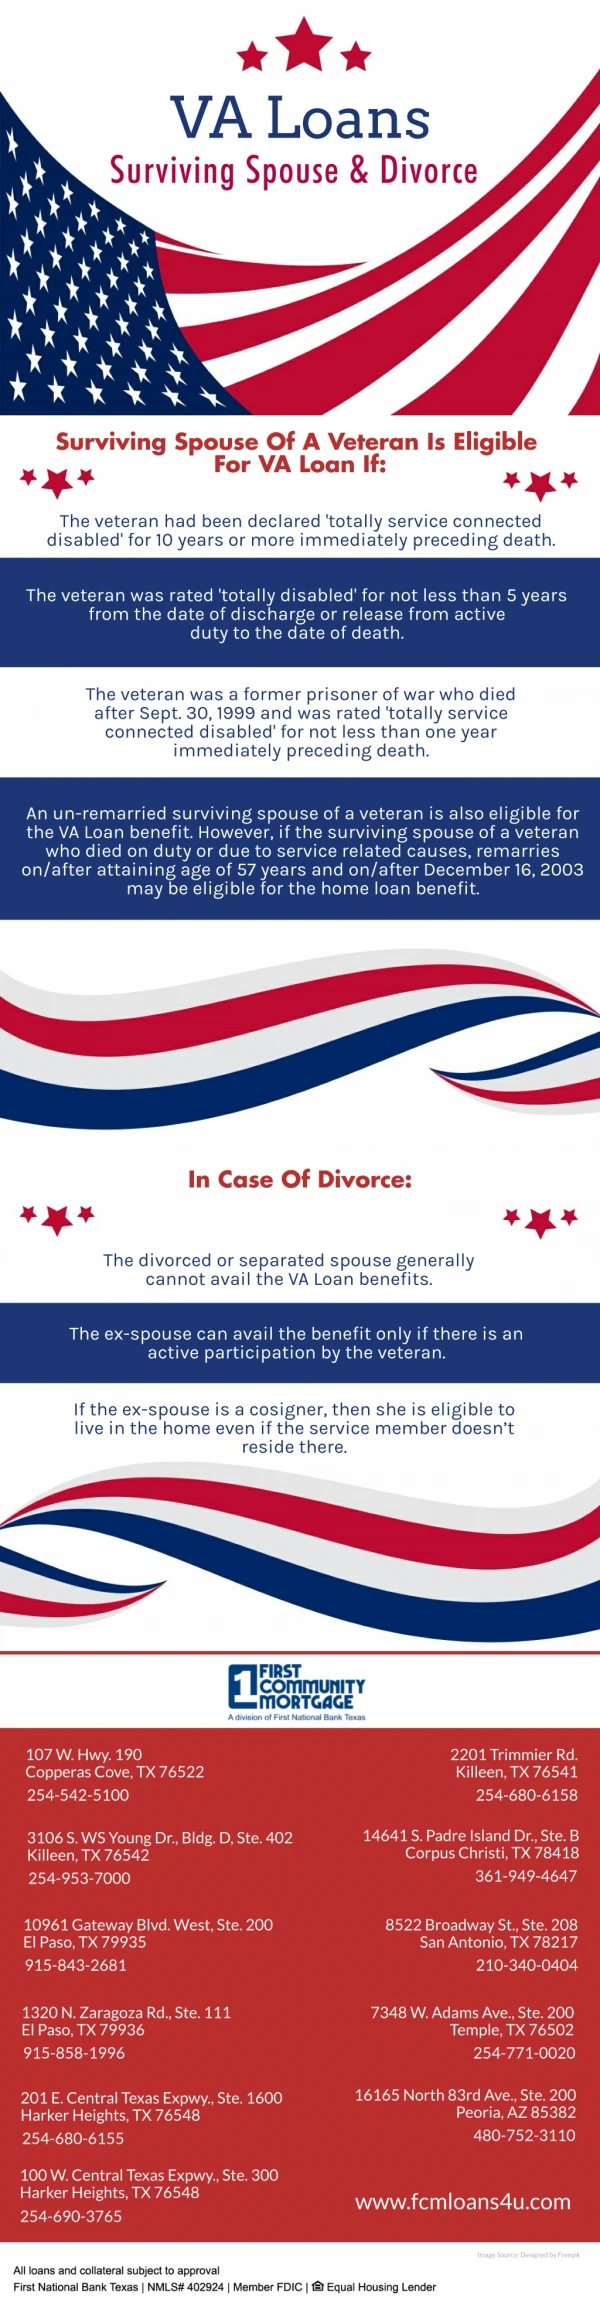 VA Loans Surviving Spouse & Divorce